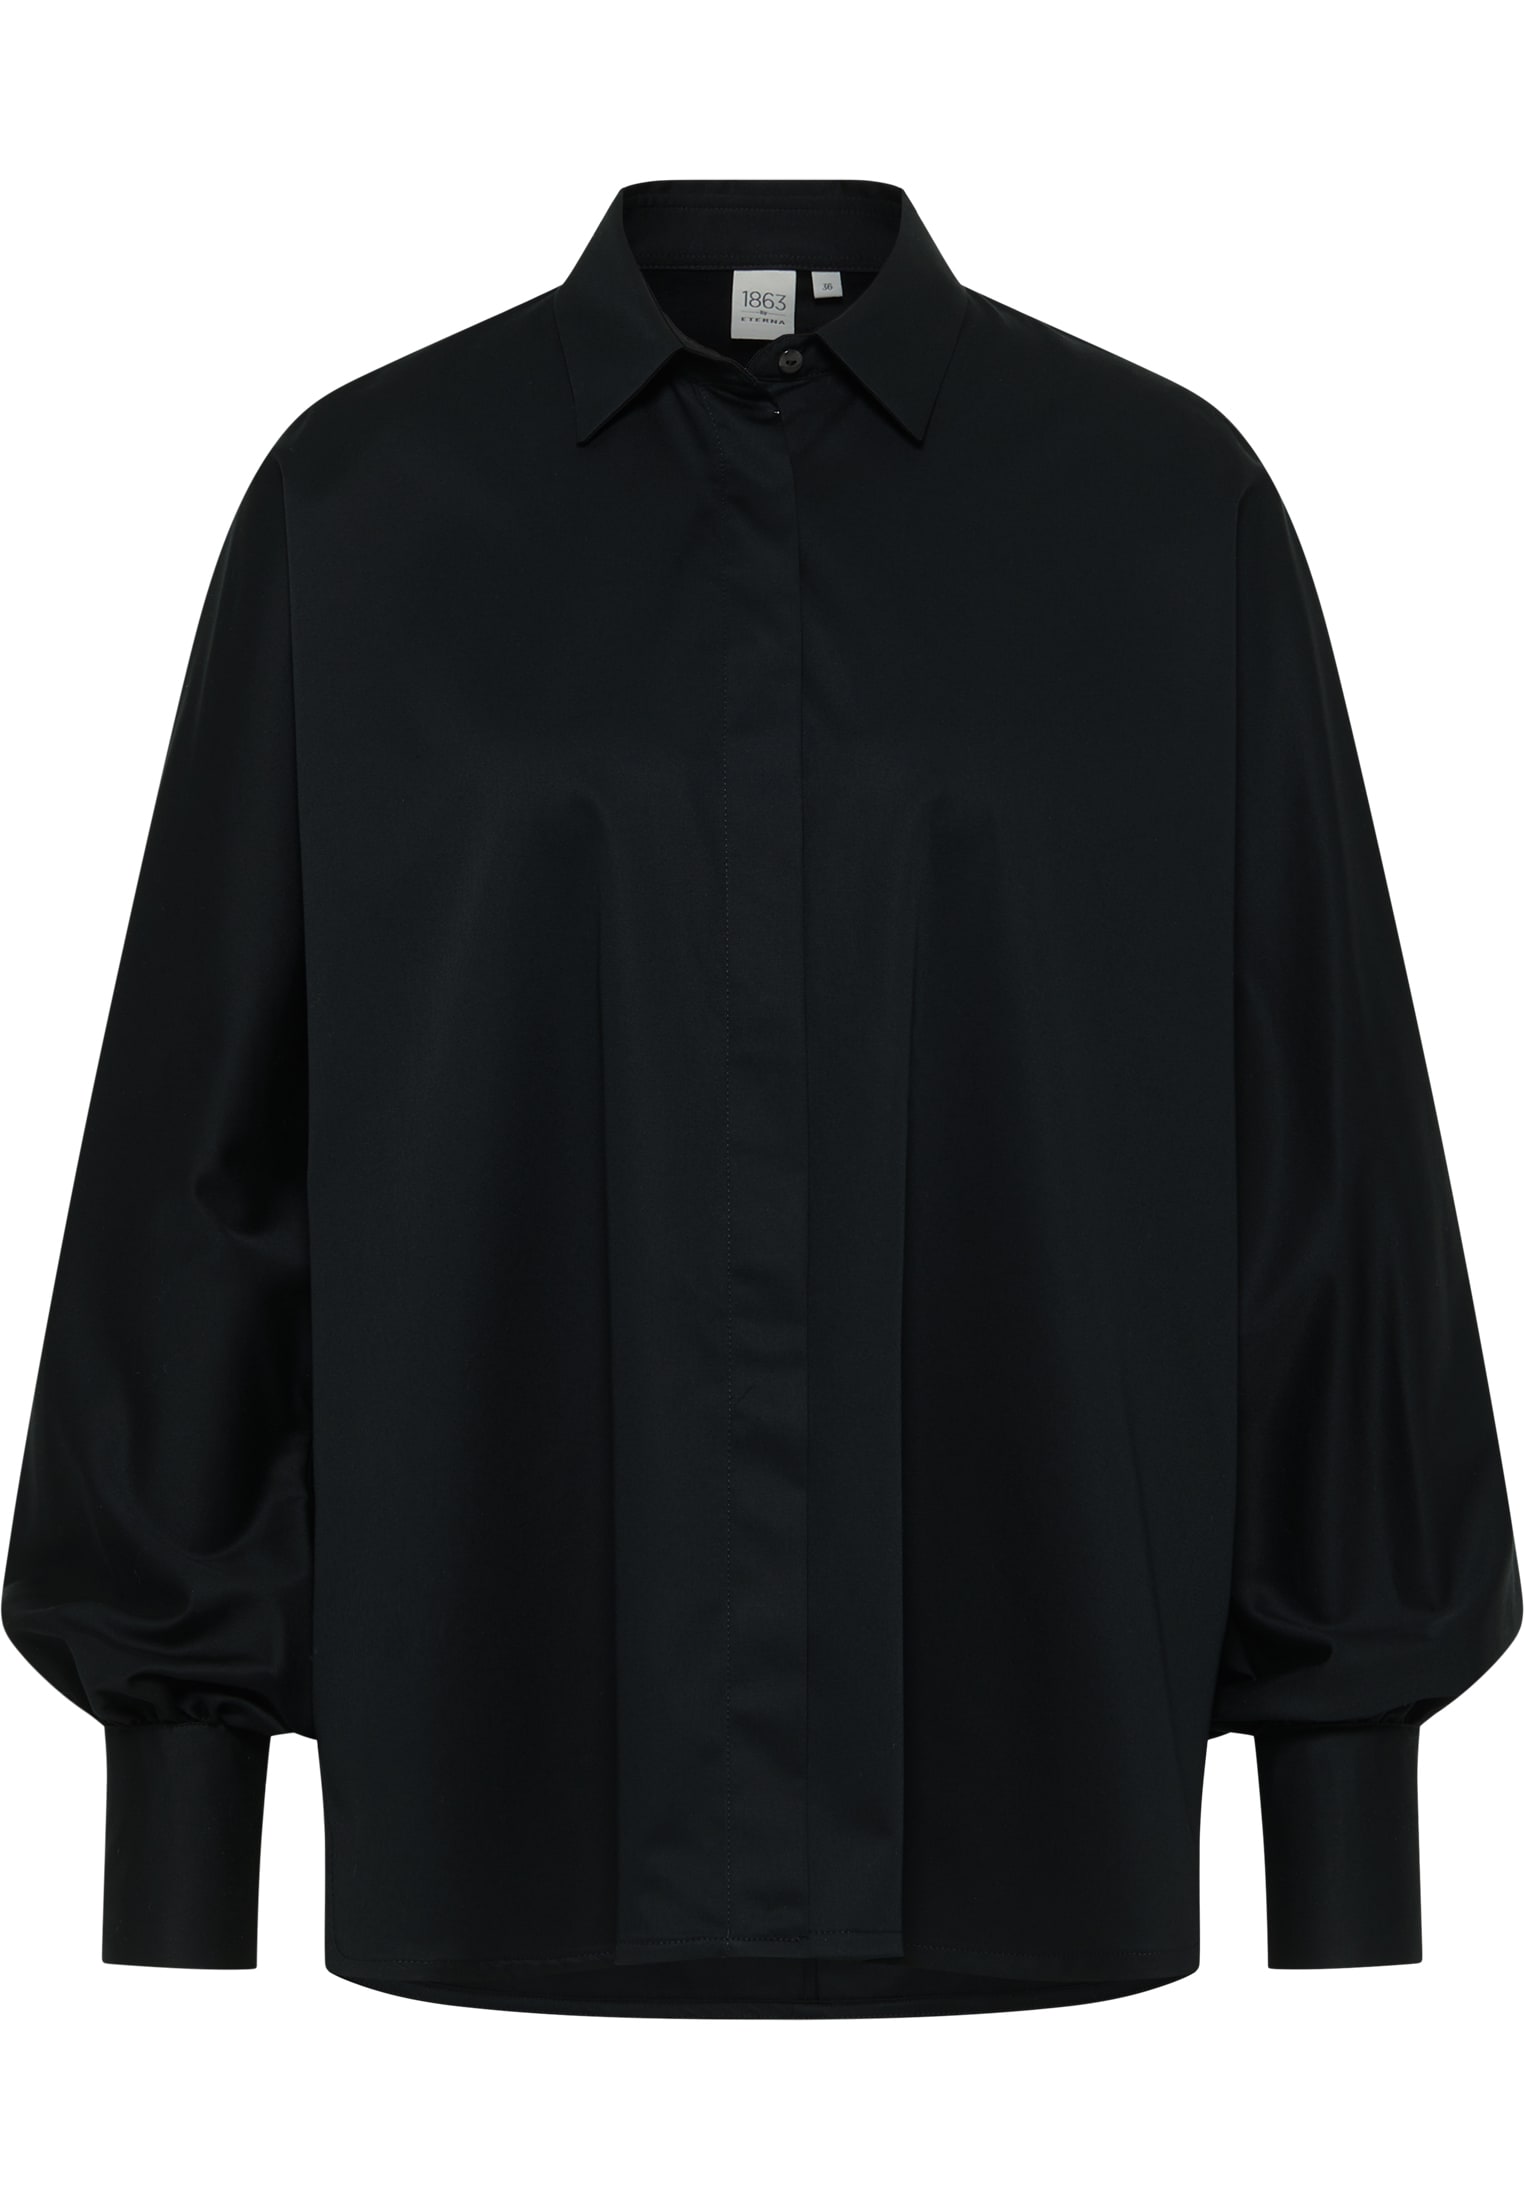 Bluse unifarben Shirt Satin | | schwarz | schwarz in 2BL04026-03-91-40-1/1 40 | Langarm